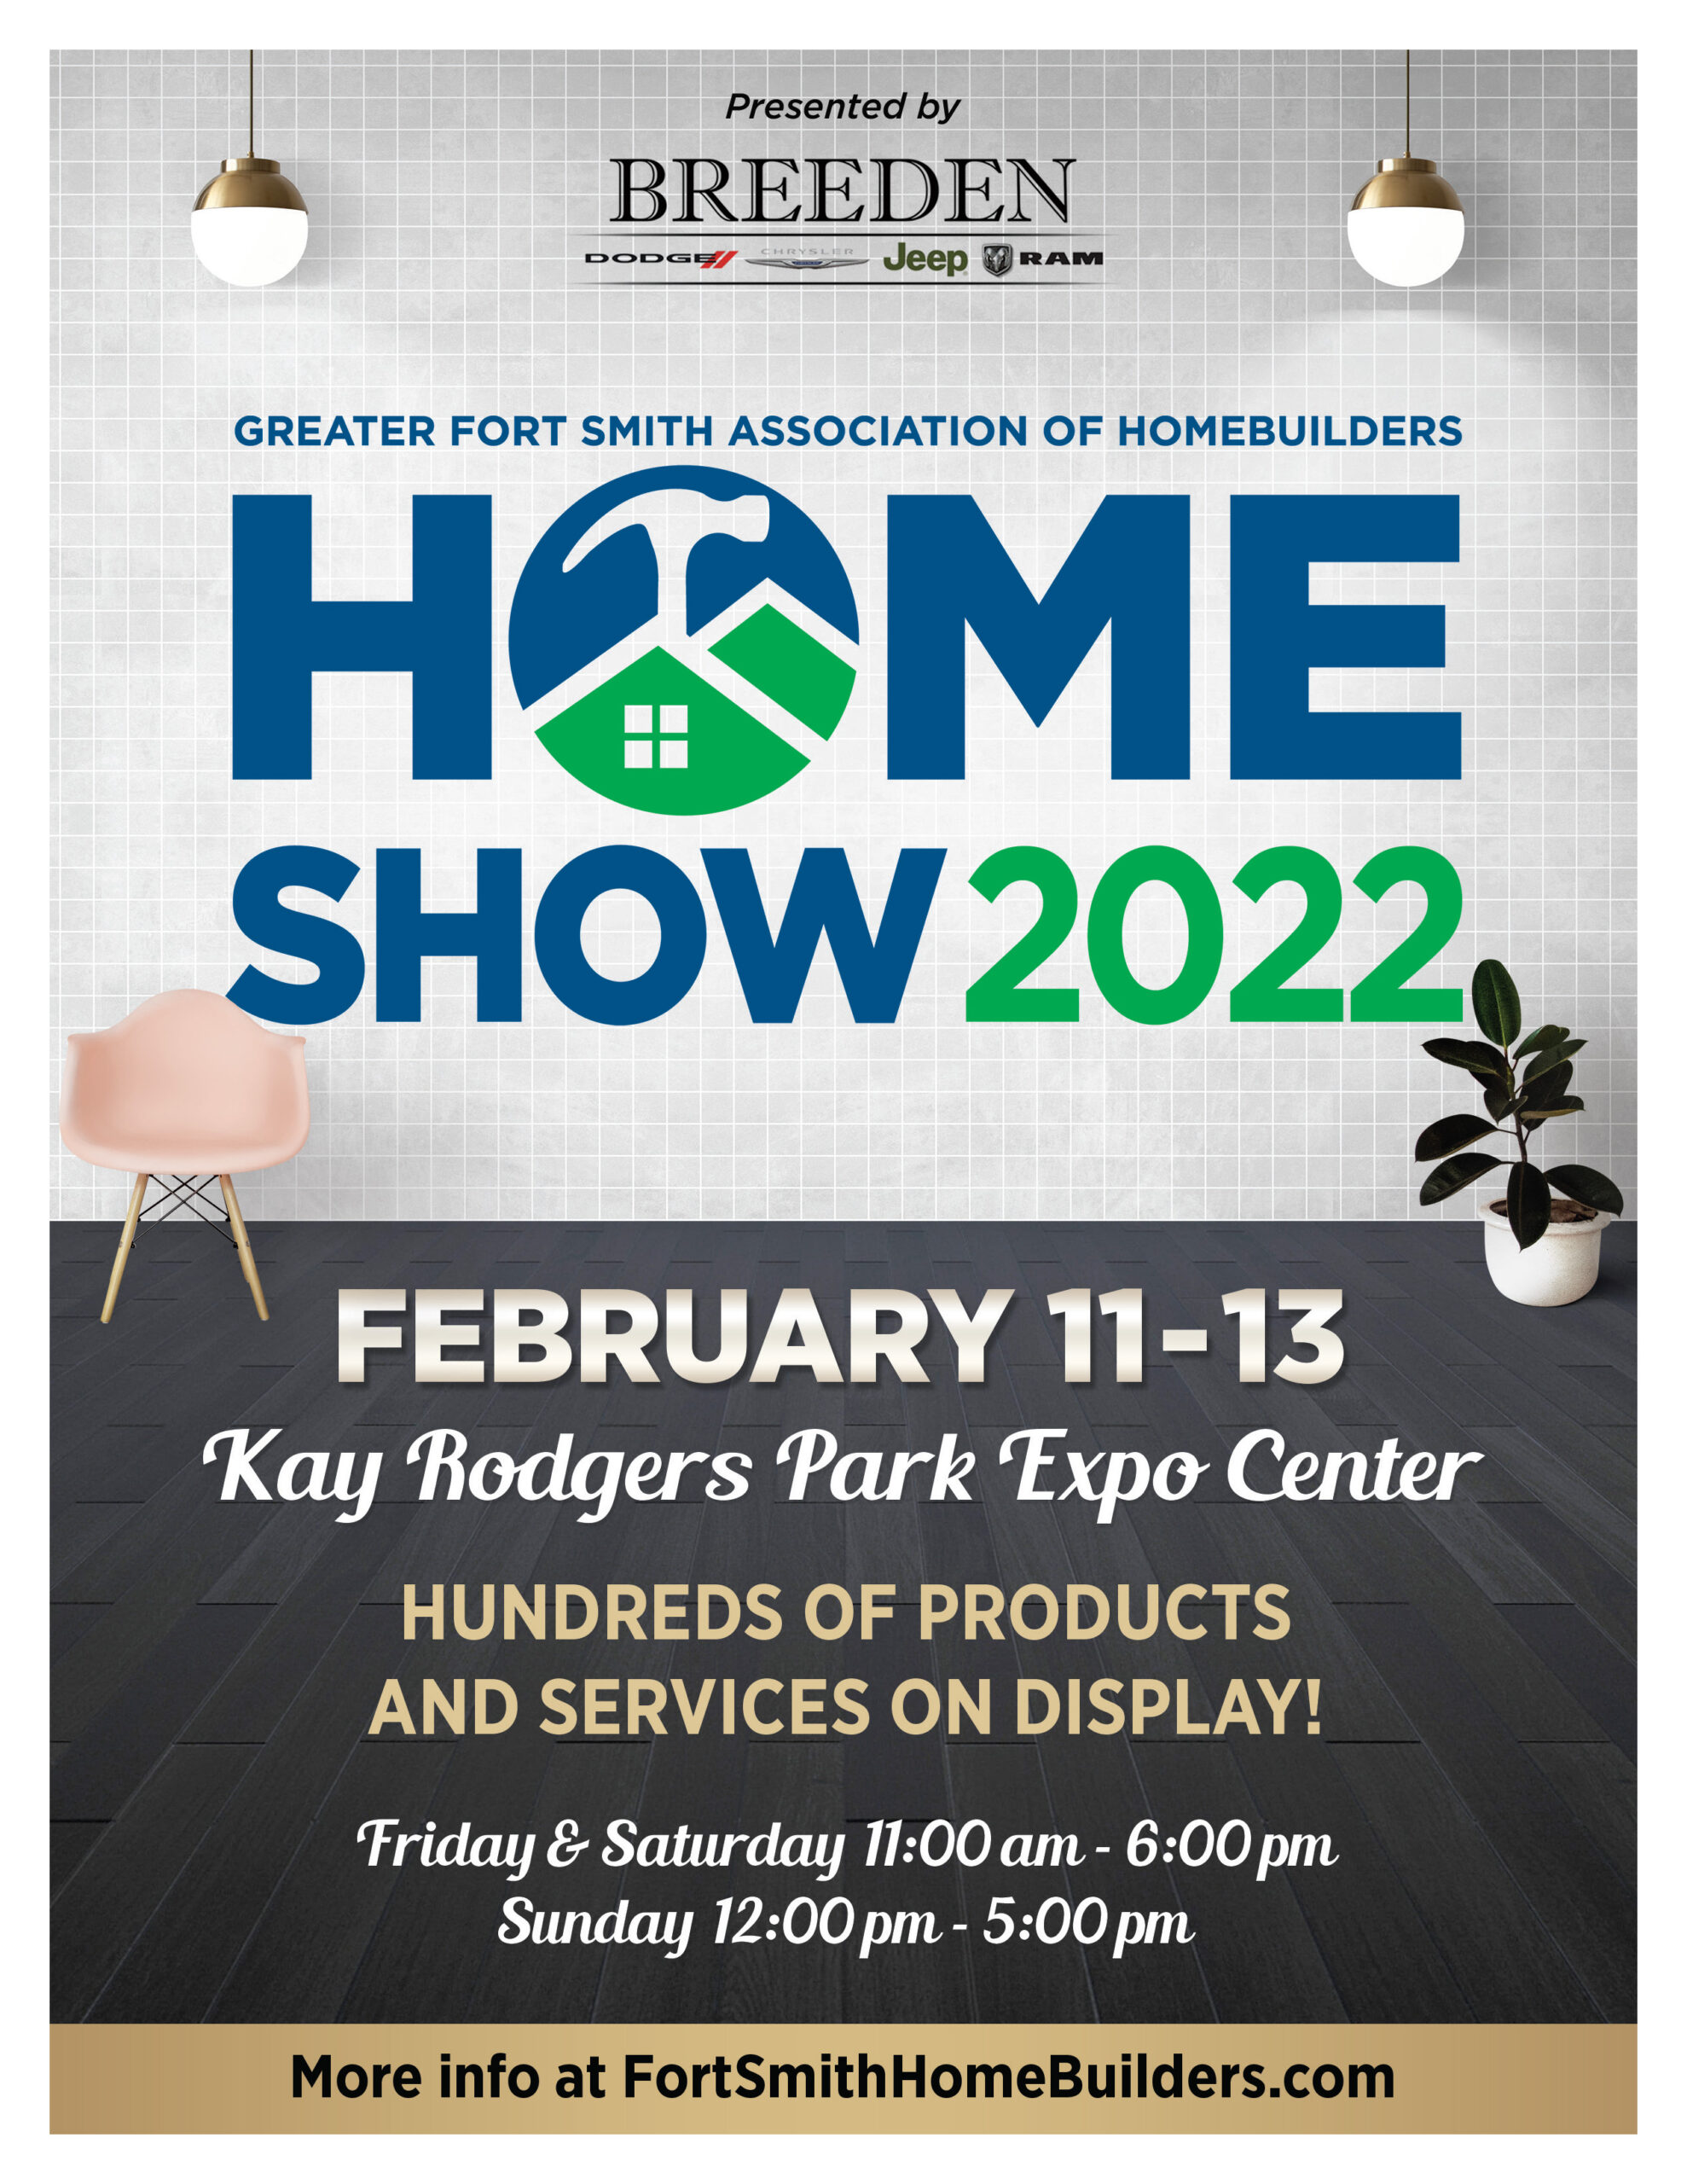 Home Show 2022